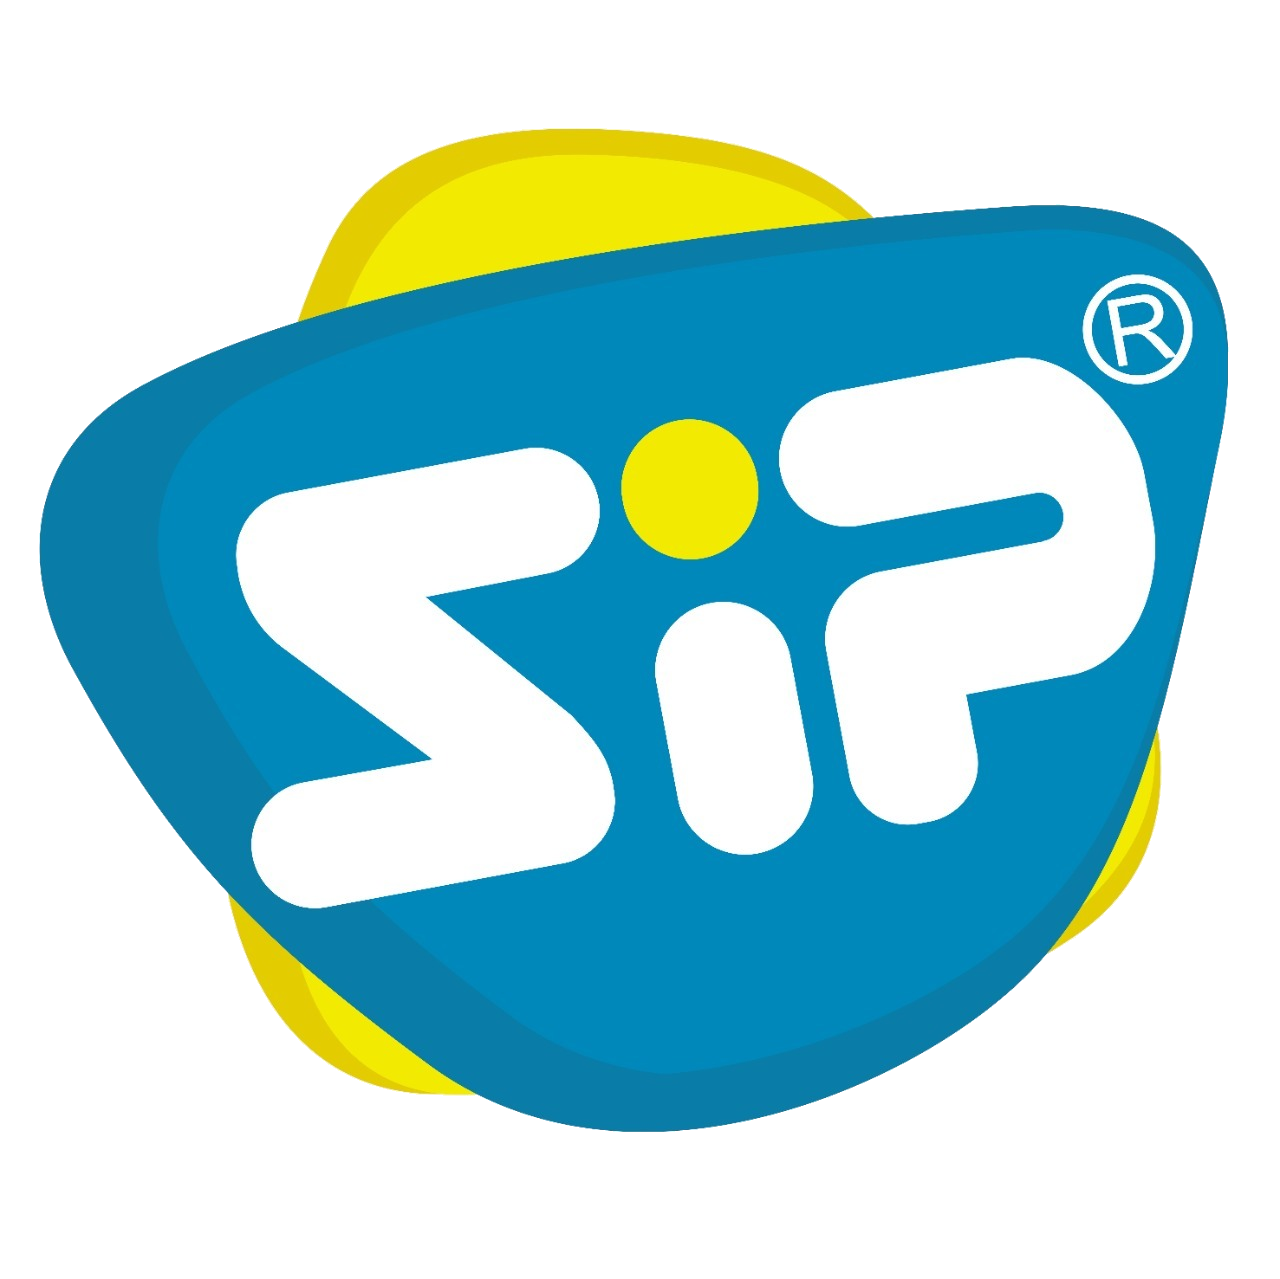 logo smk sip